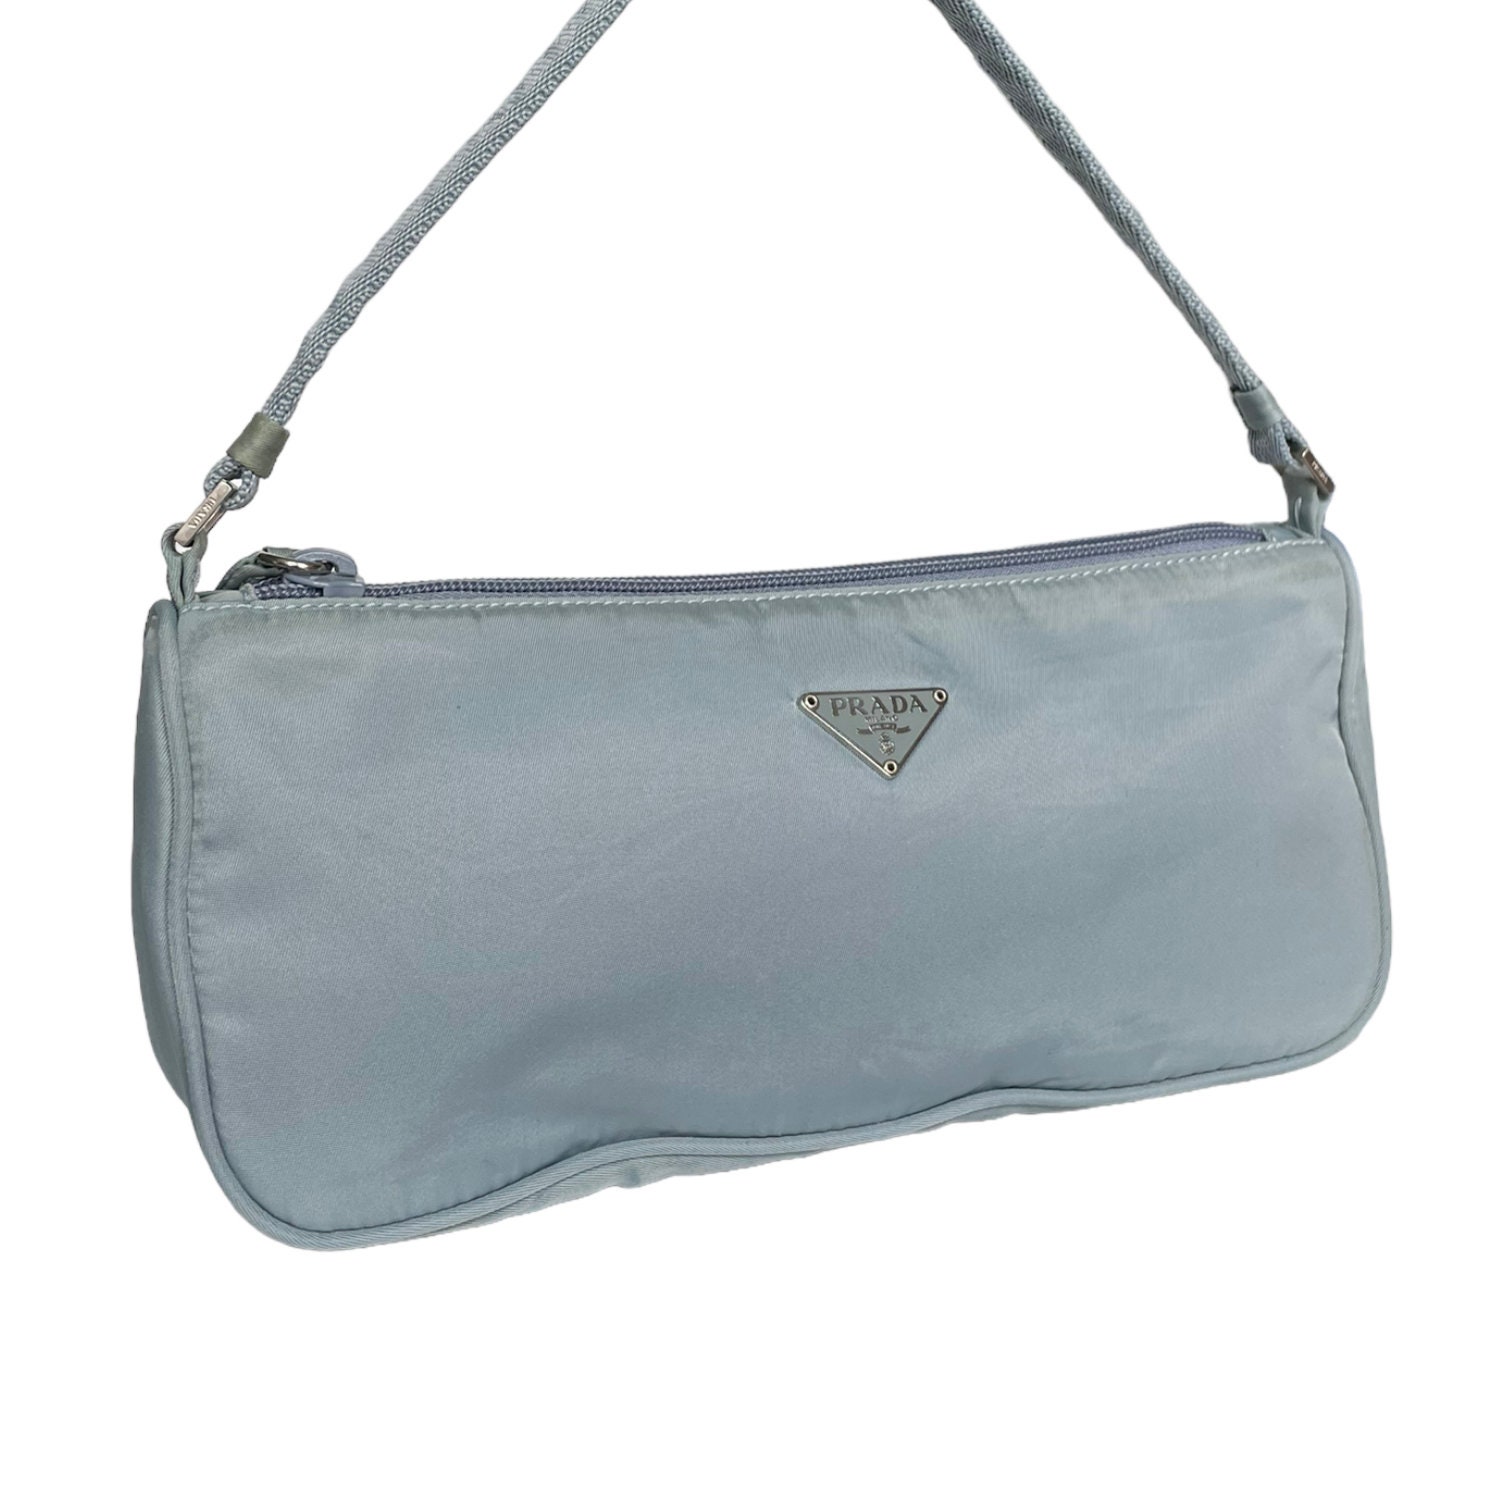 Prada Bag Authentic Prada Nylon Shoulder Baguette Bag in - Etsy